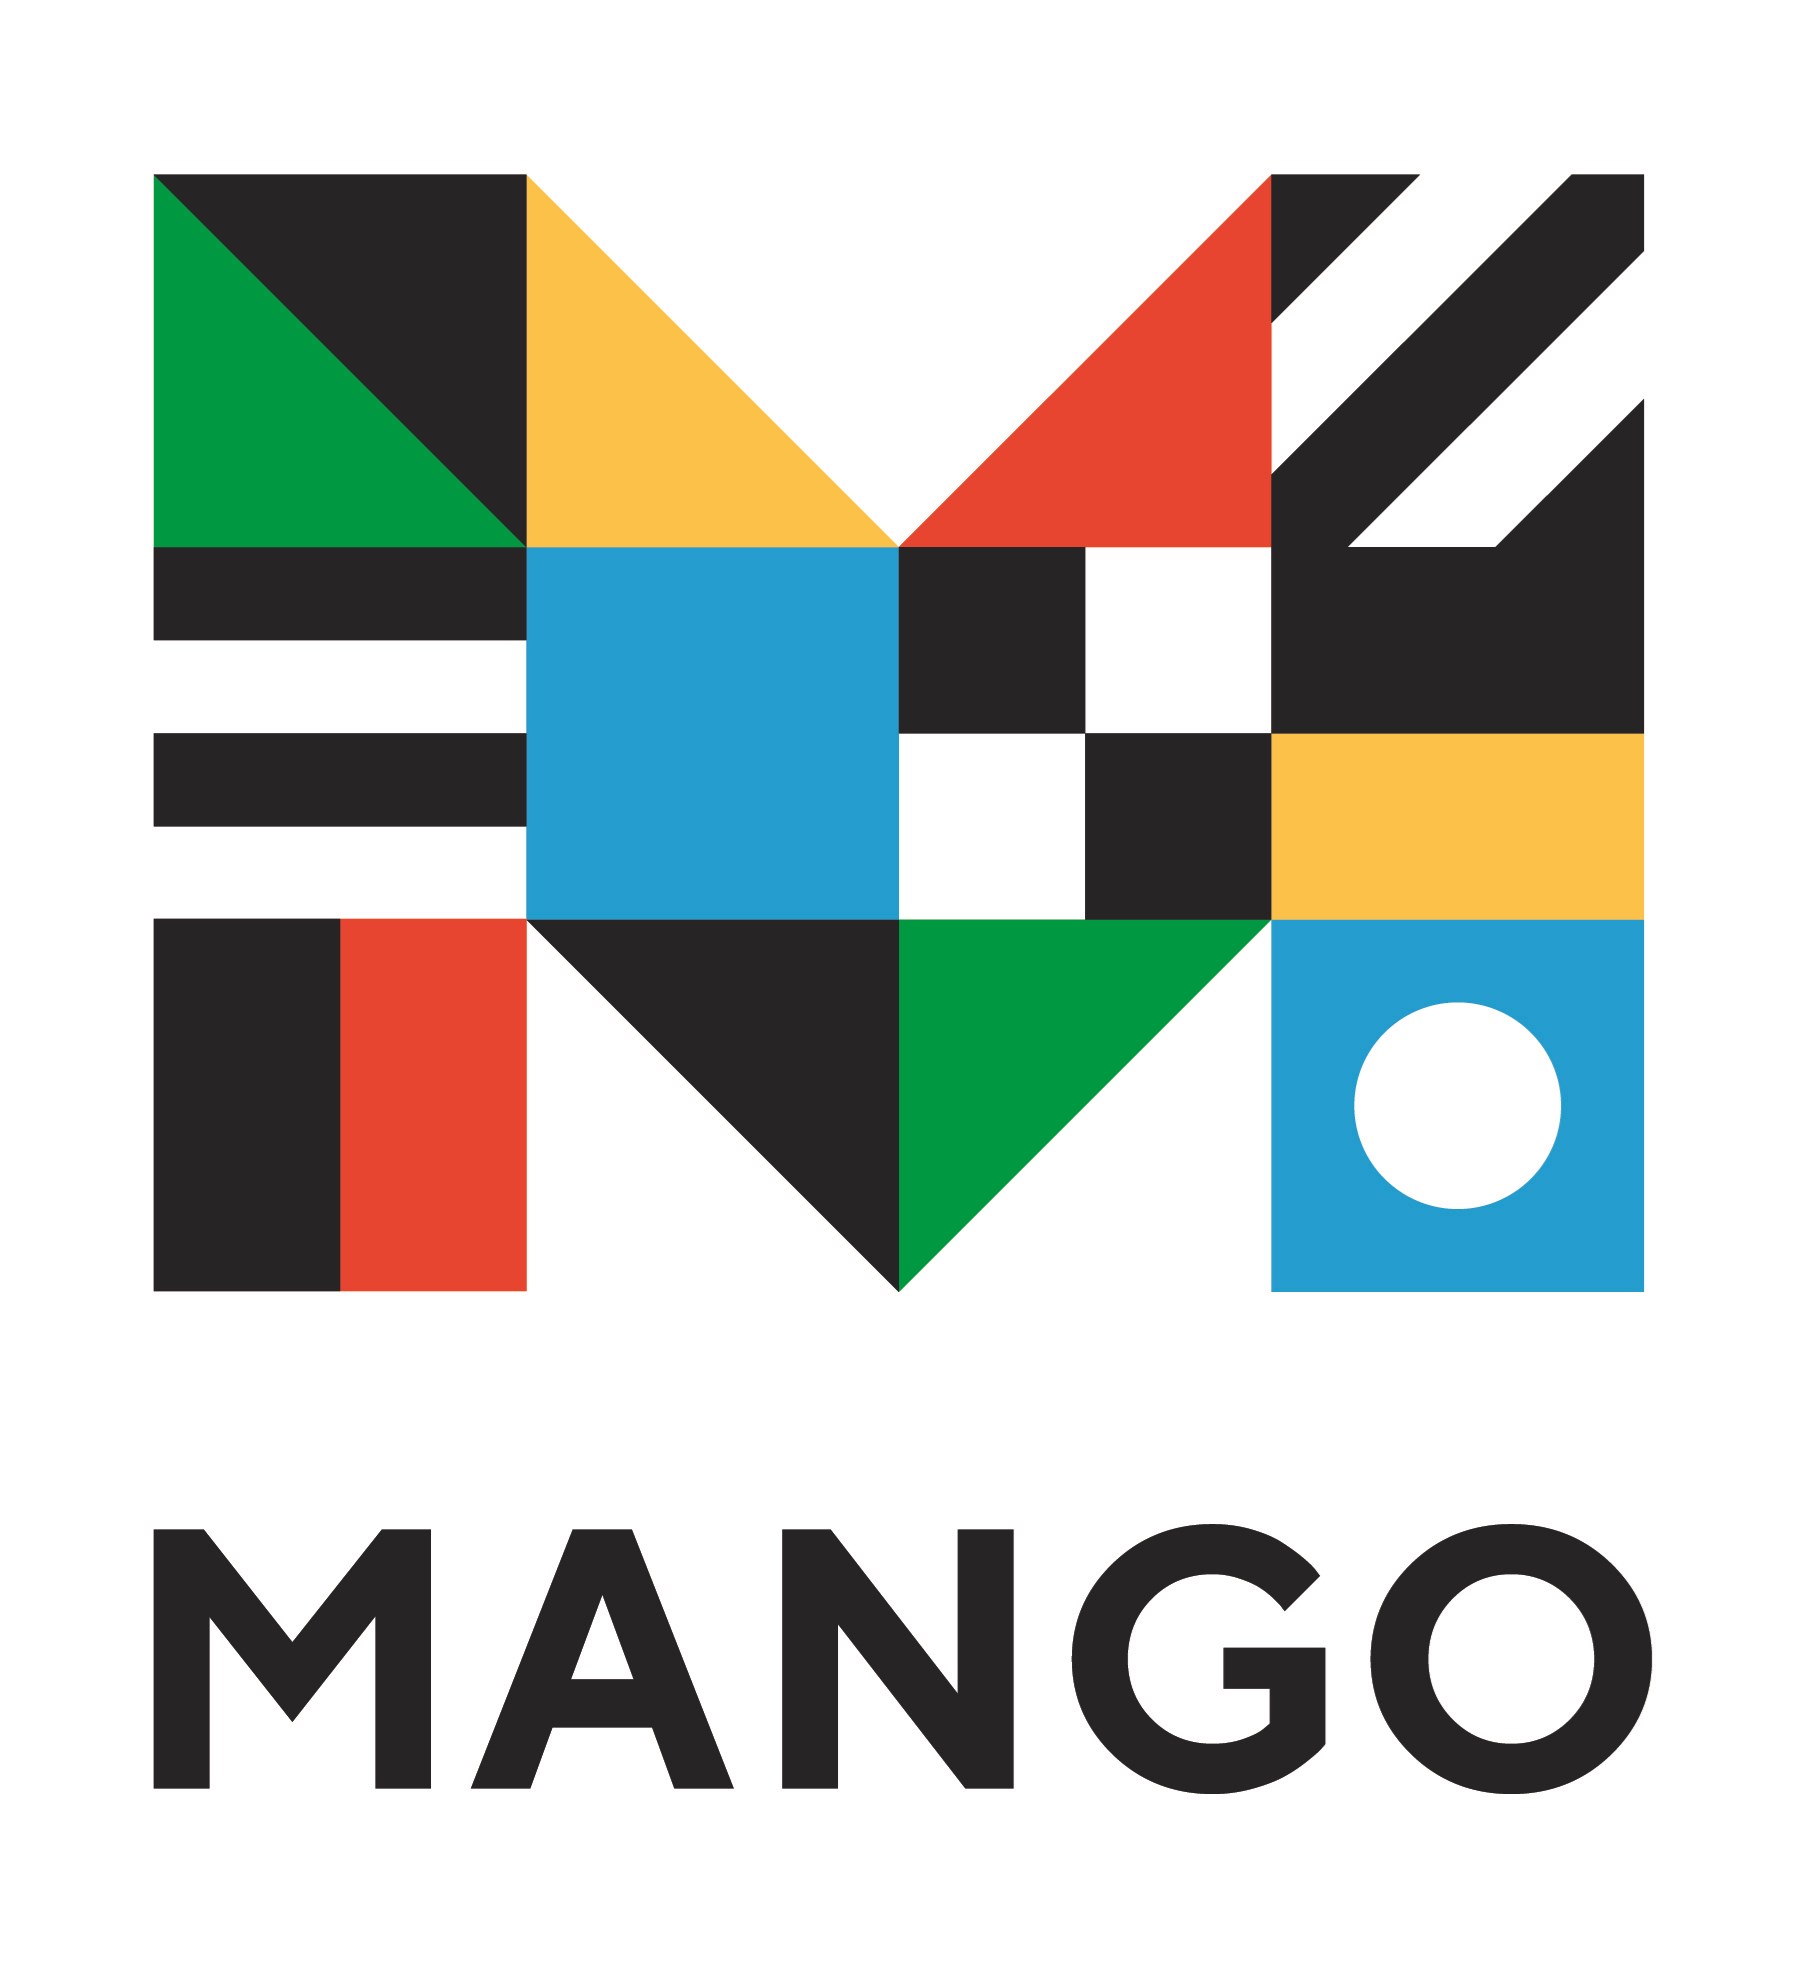 Mango languages logo.